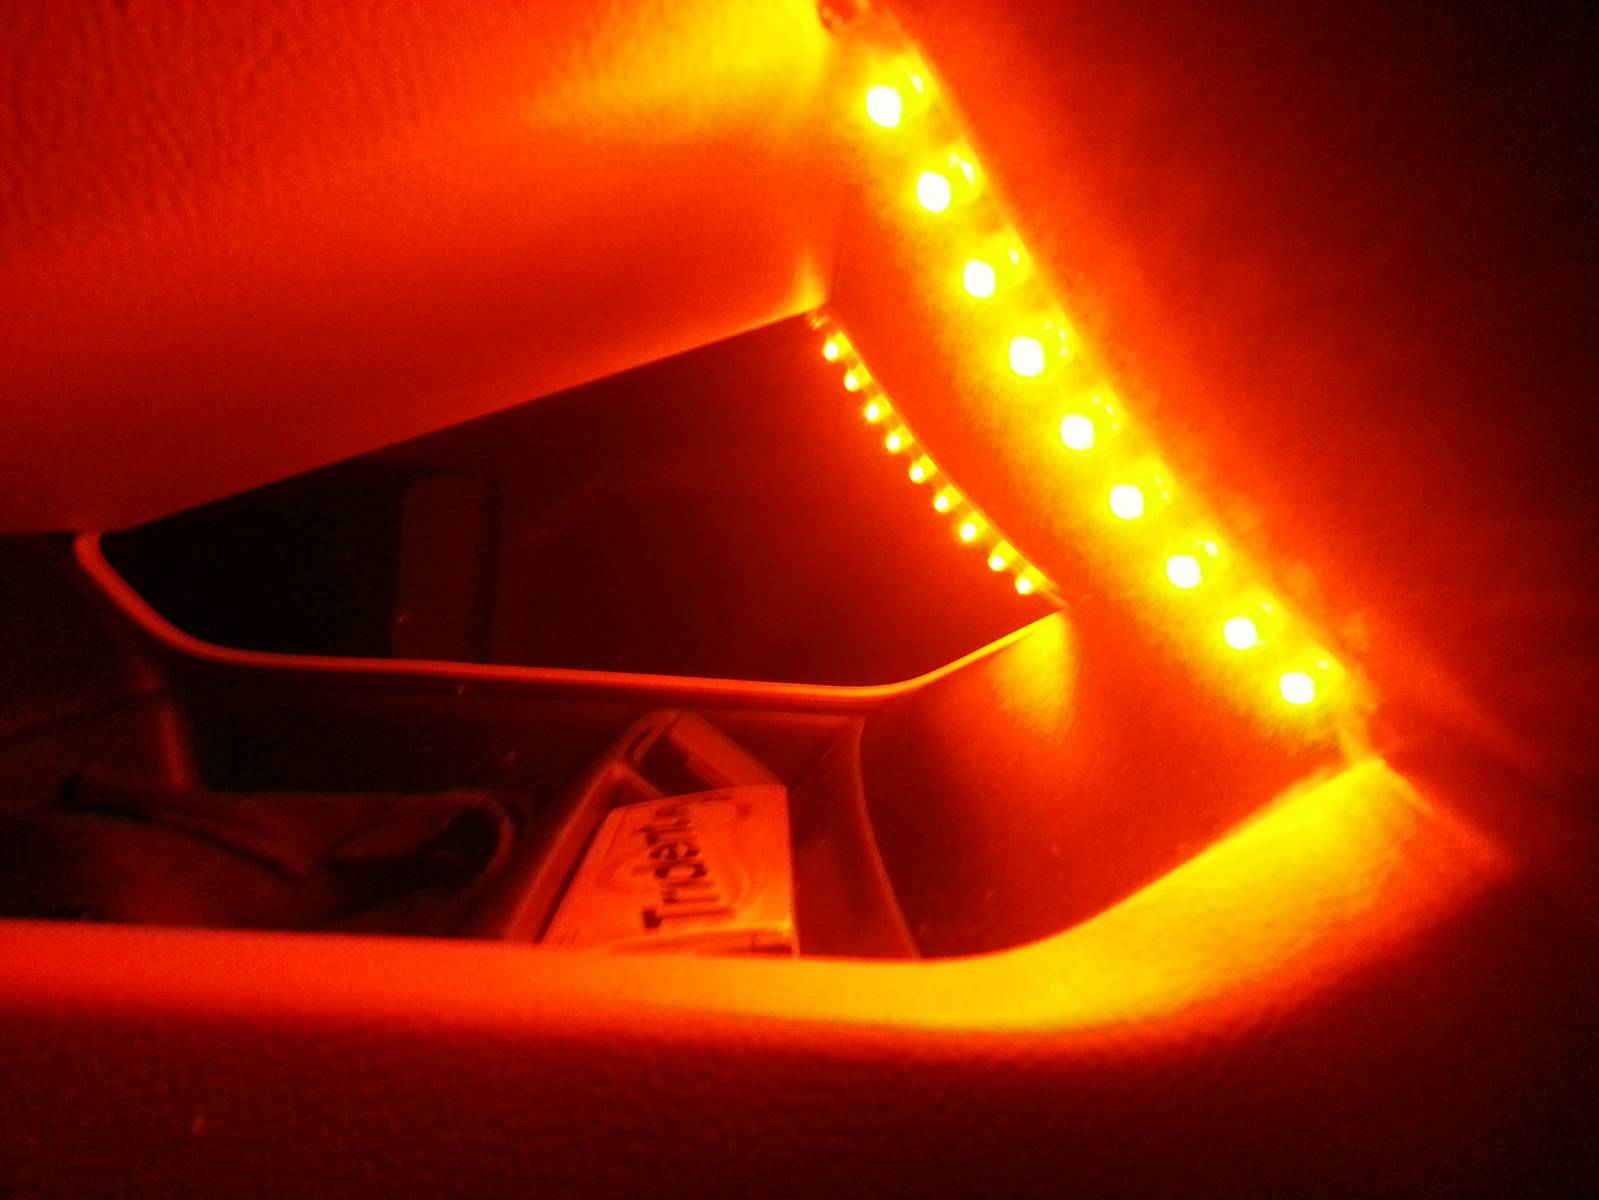 ORange LEDs at night